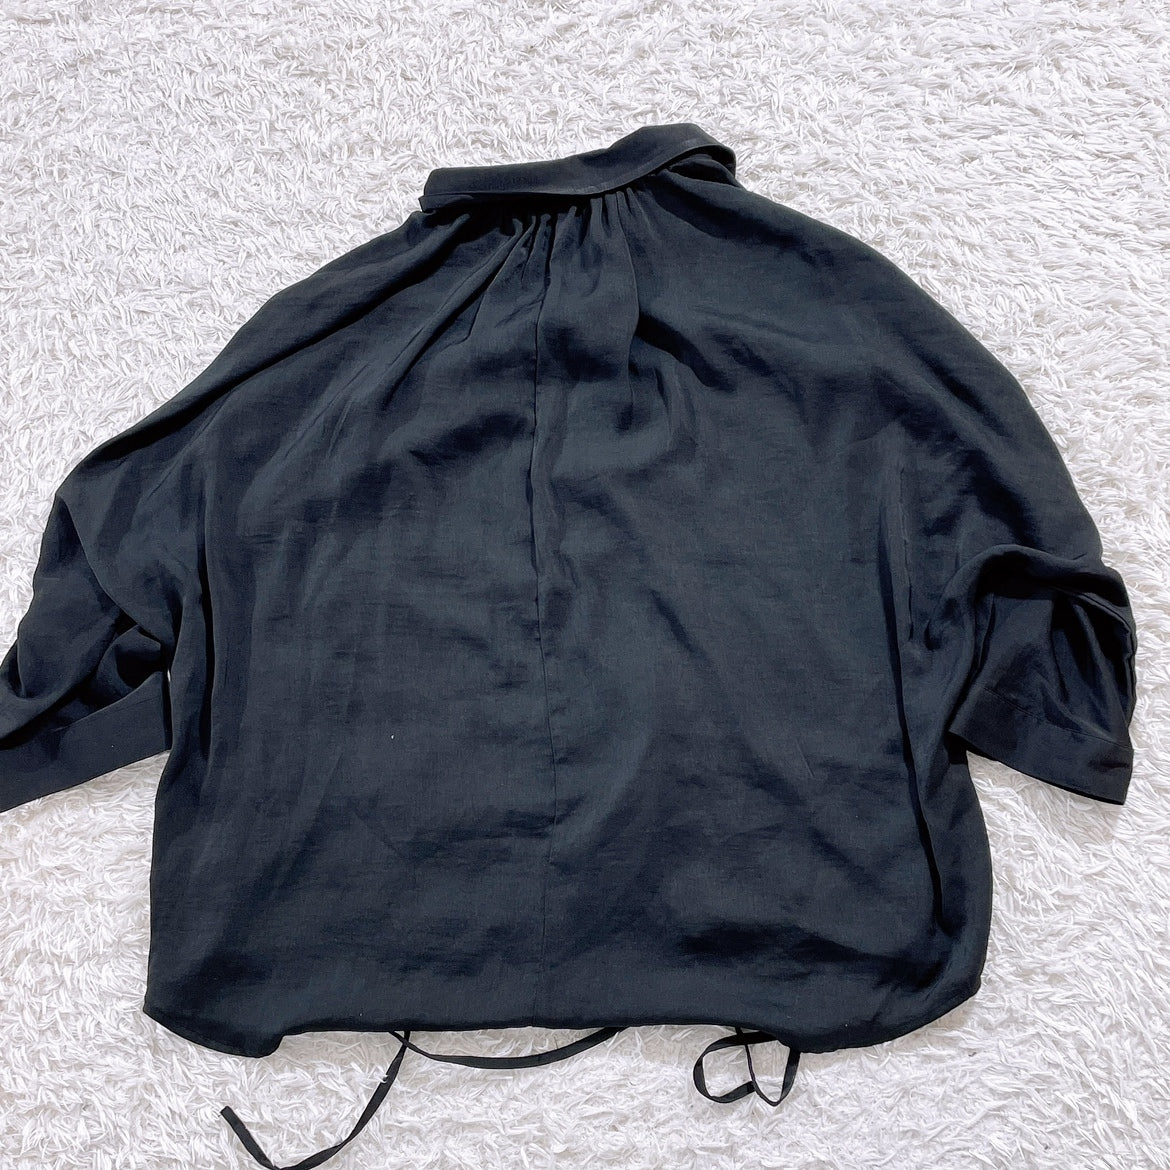 レディースXL GU シャツ 長袖 黒 ブラック ウエストのひも付き シンプル ポケット有 普段着 ジーユー 【16145】